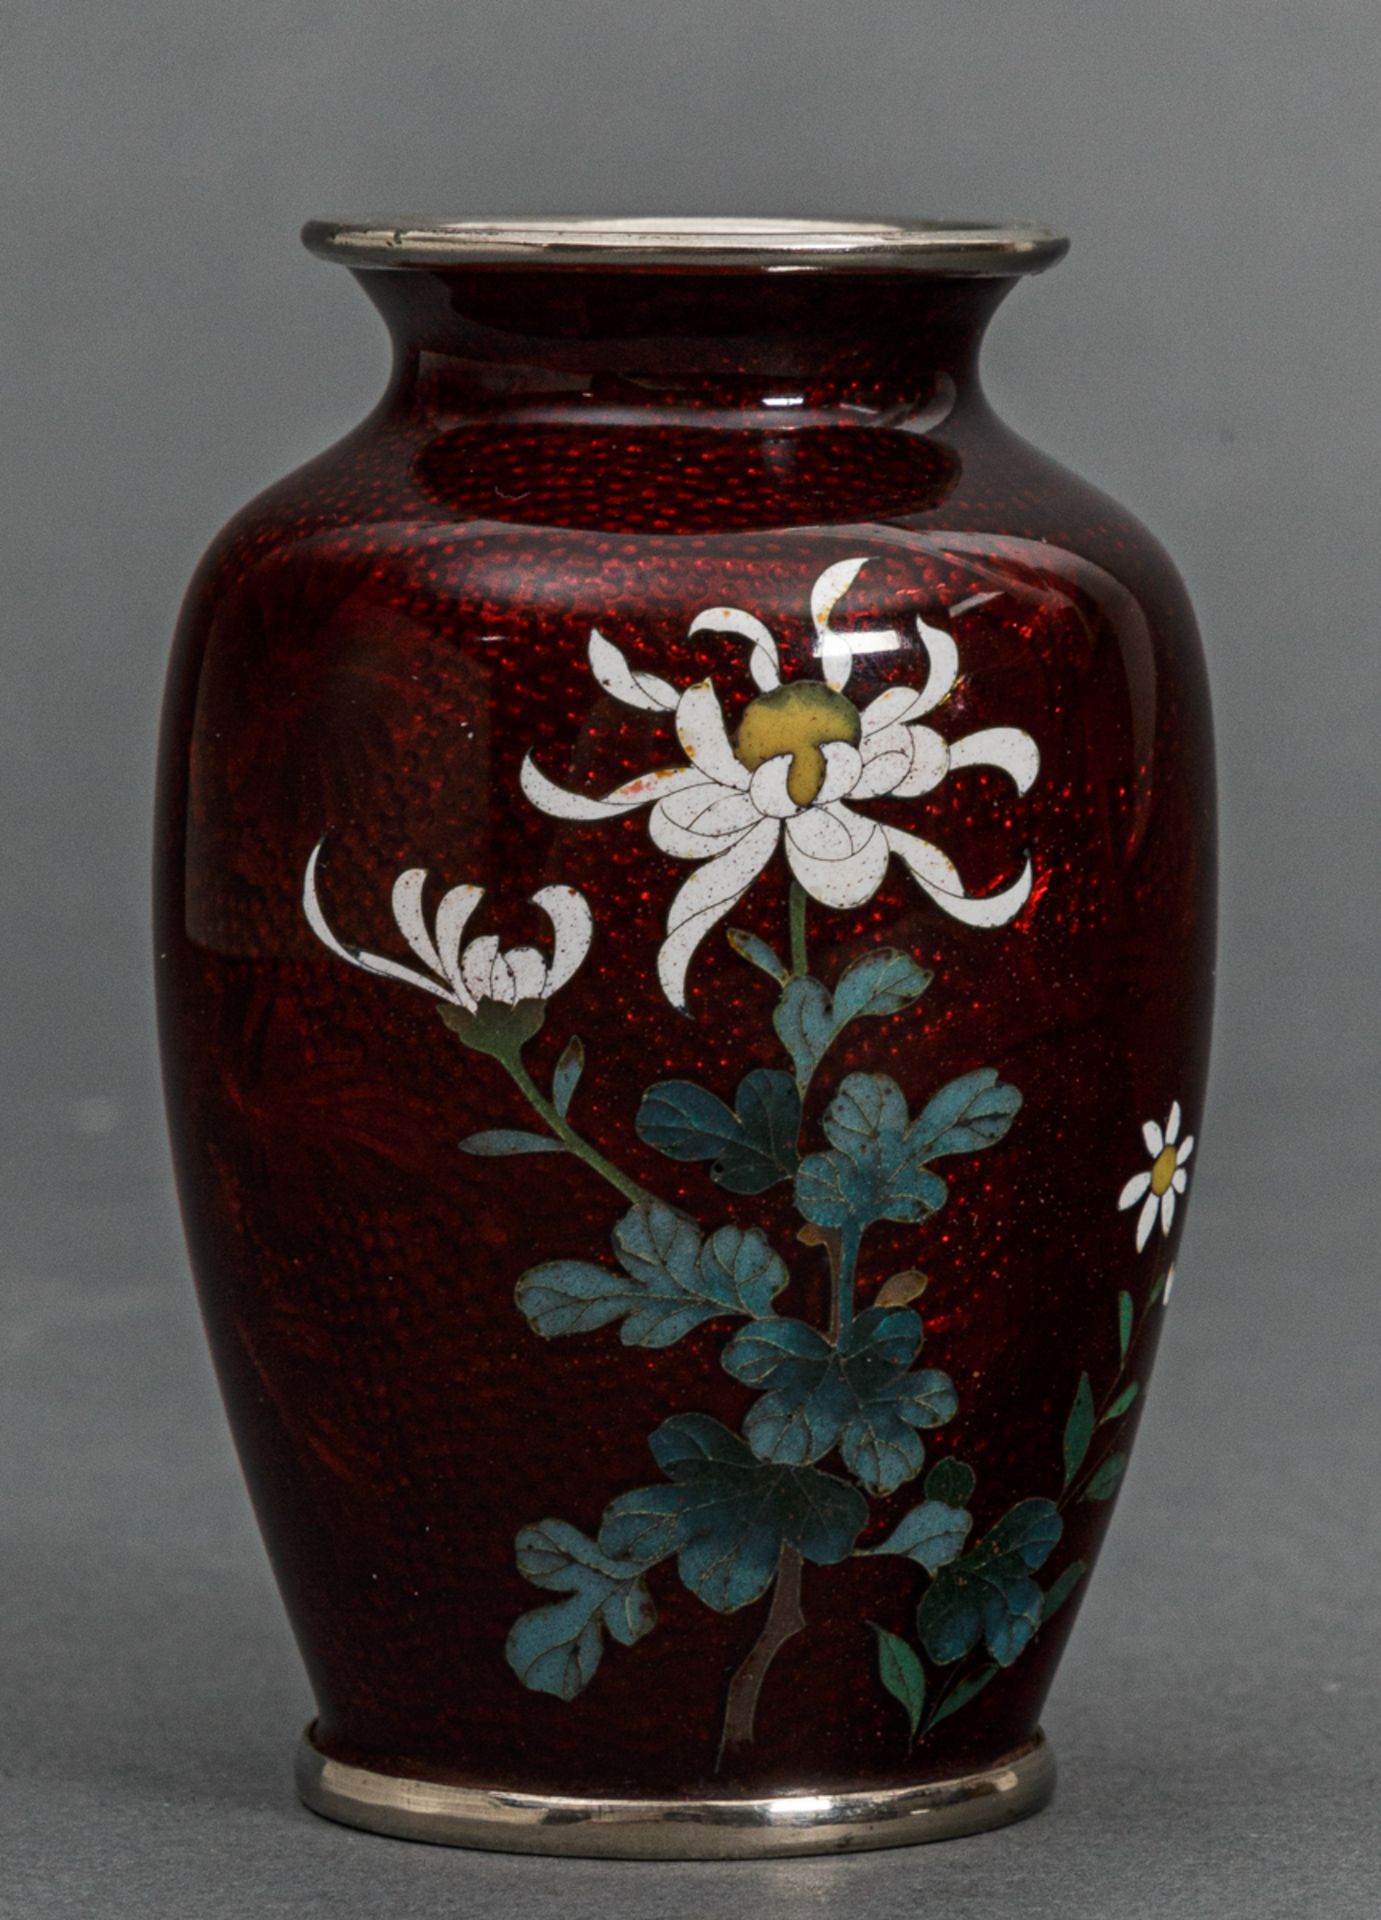 Cloisonné-Vase in Ginbari-Technik, Japan, wohl Sato Company (1945-heute), Showa-Zeit (1926-1989)